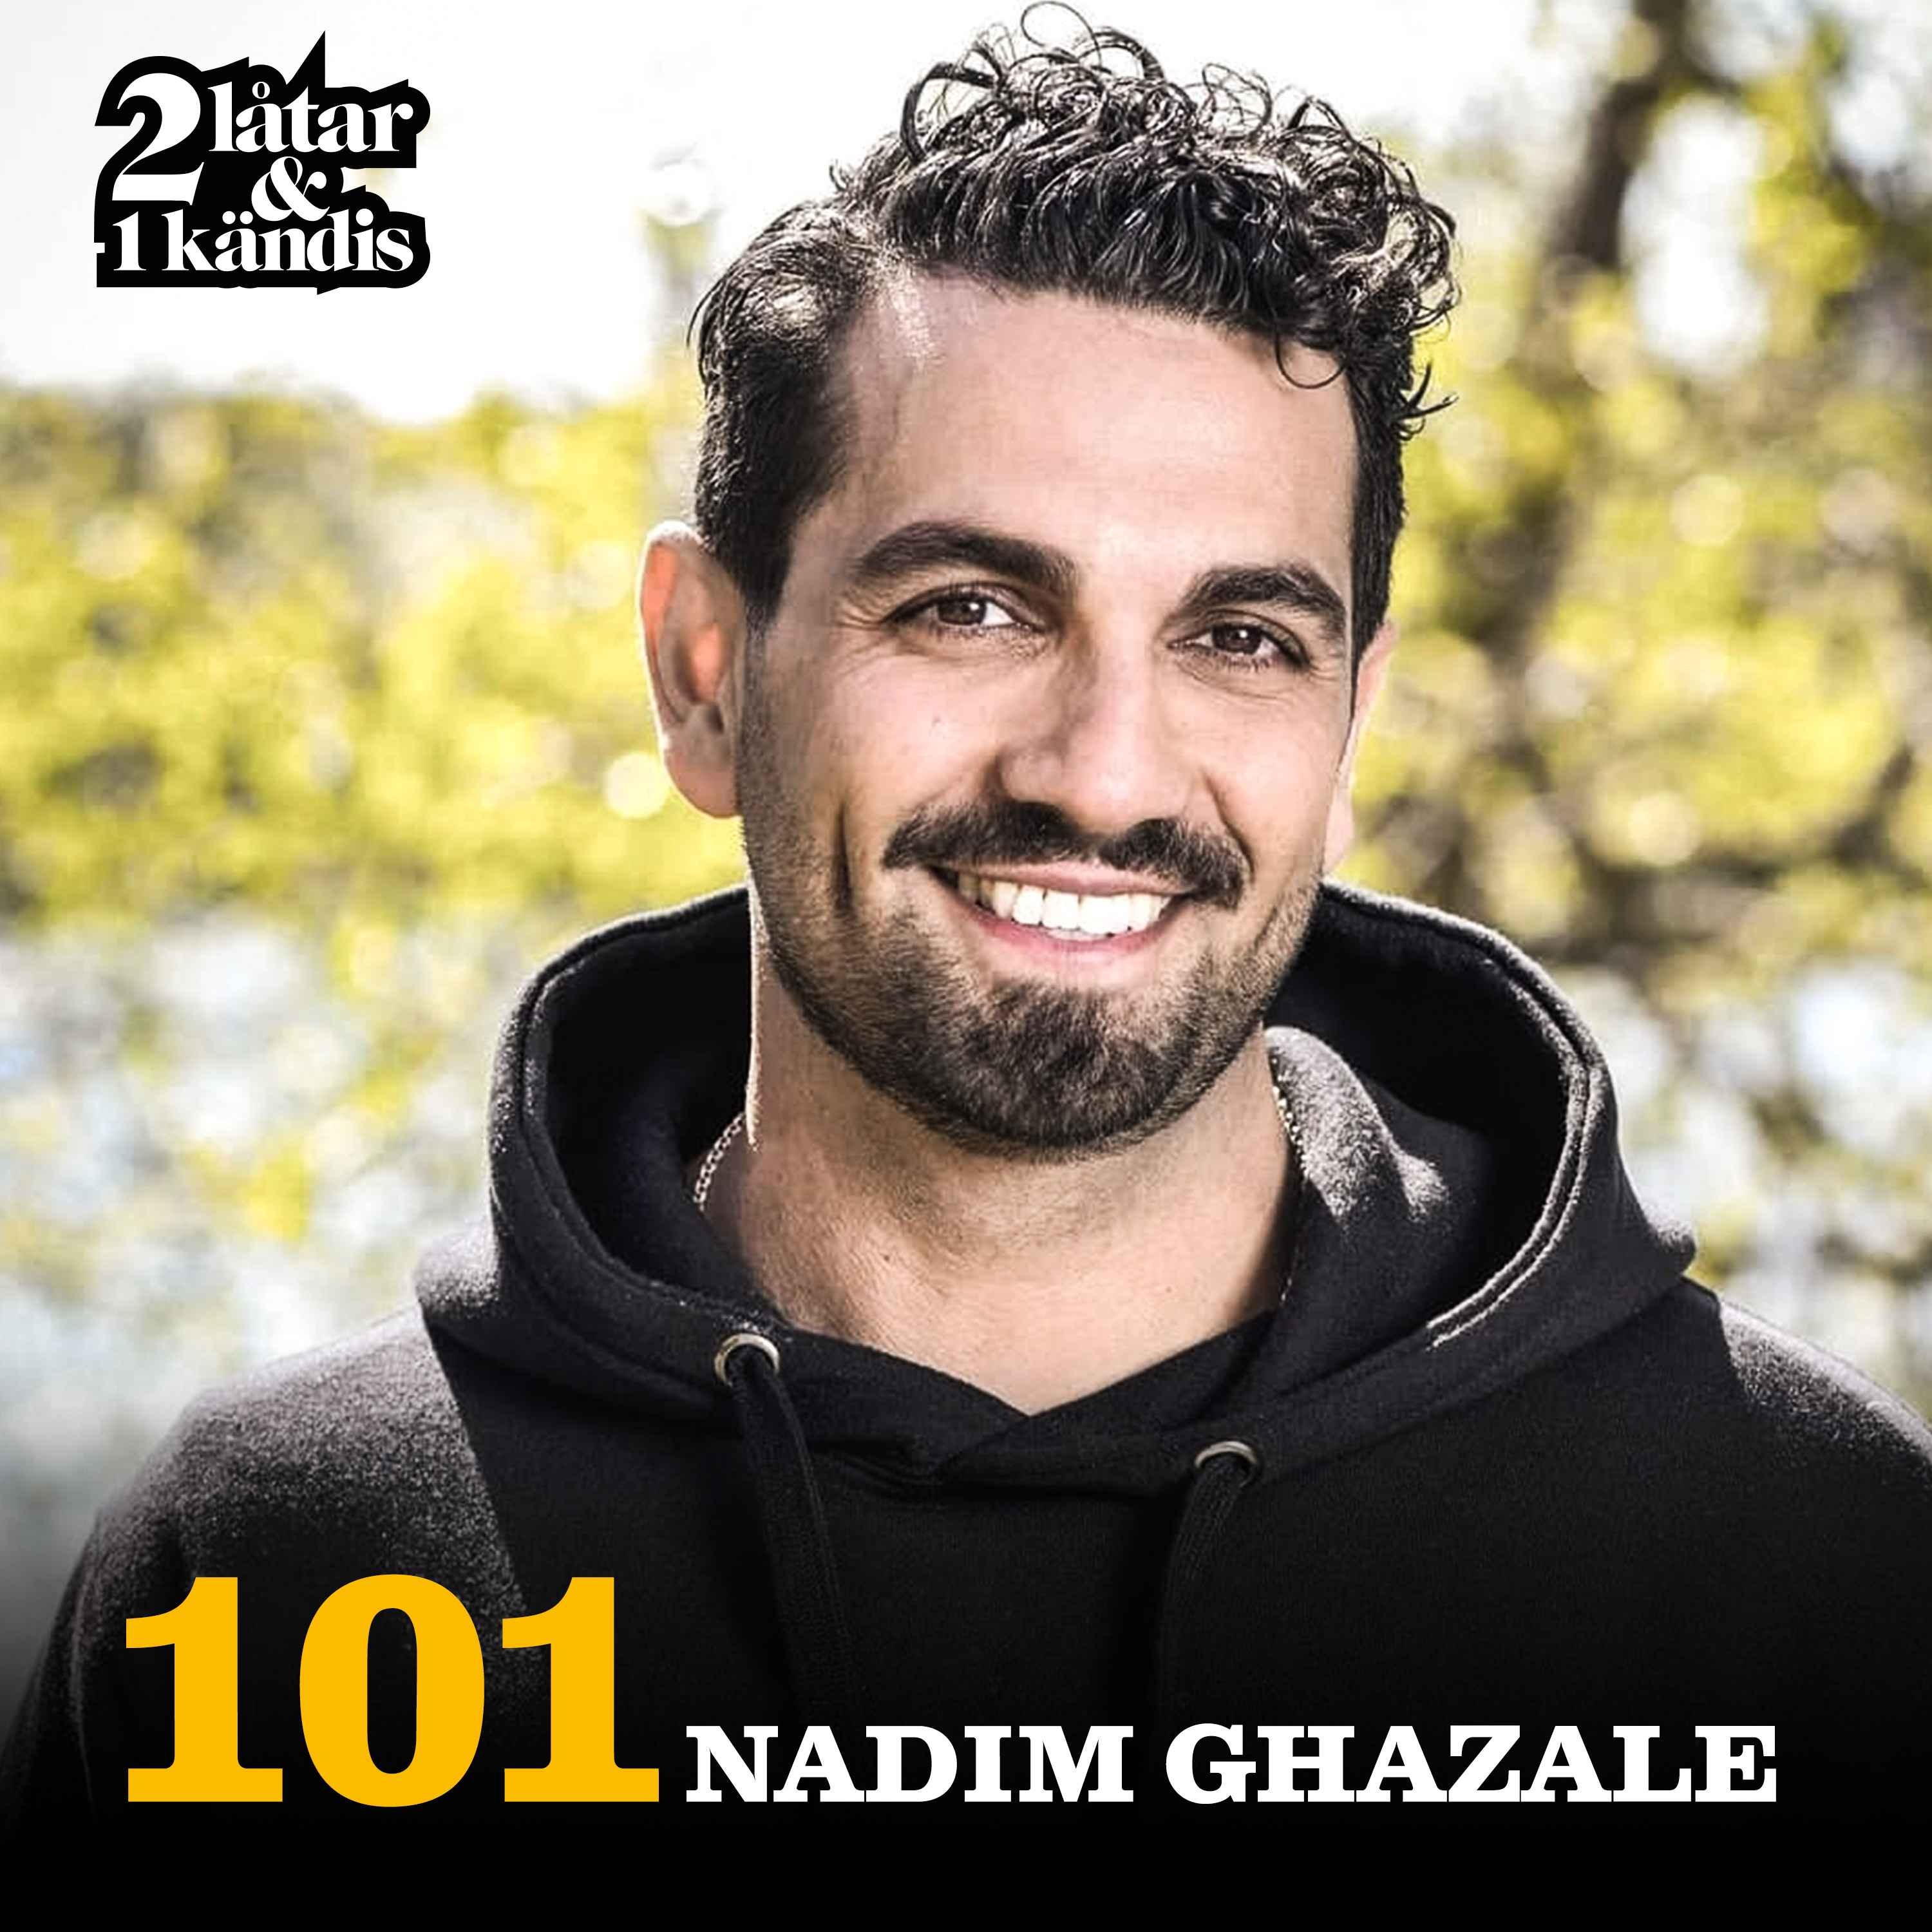 Nadim Ghazale